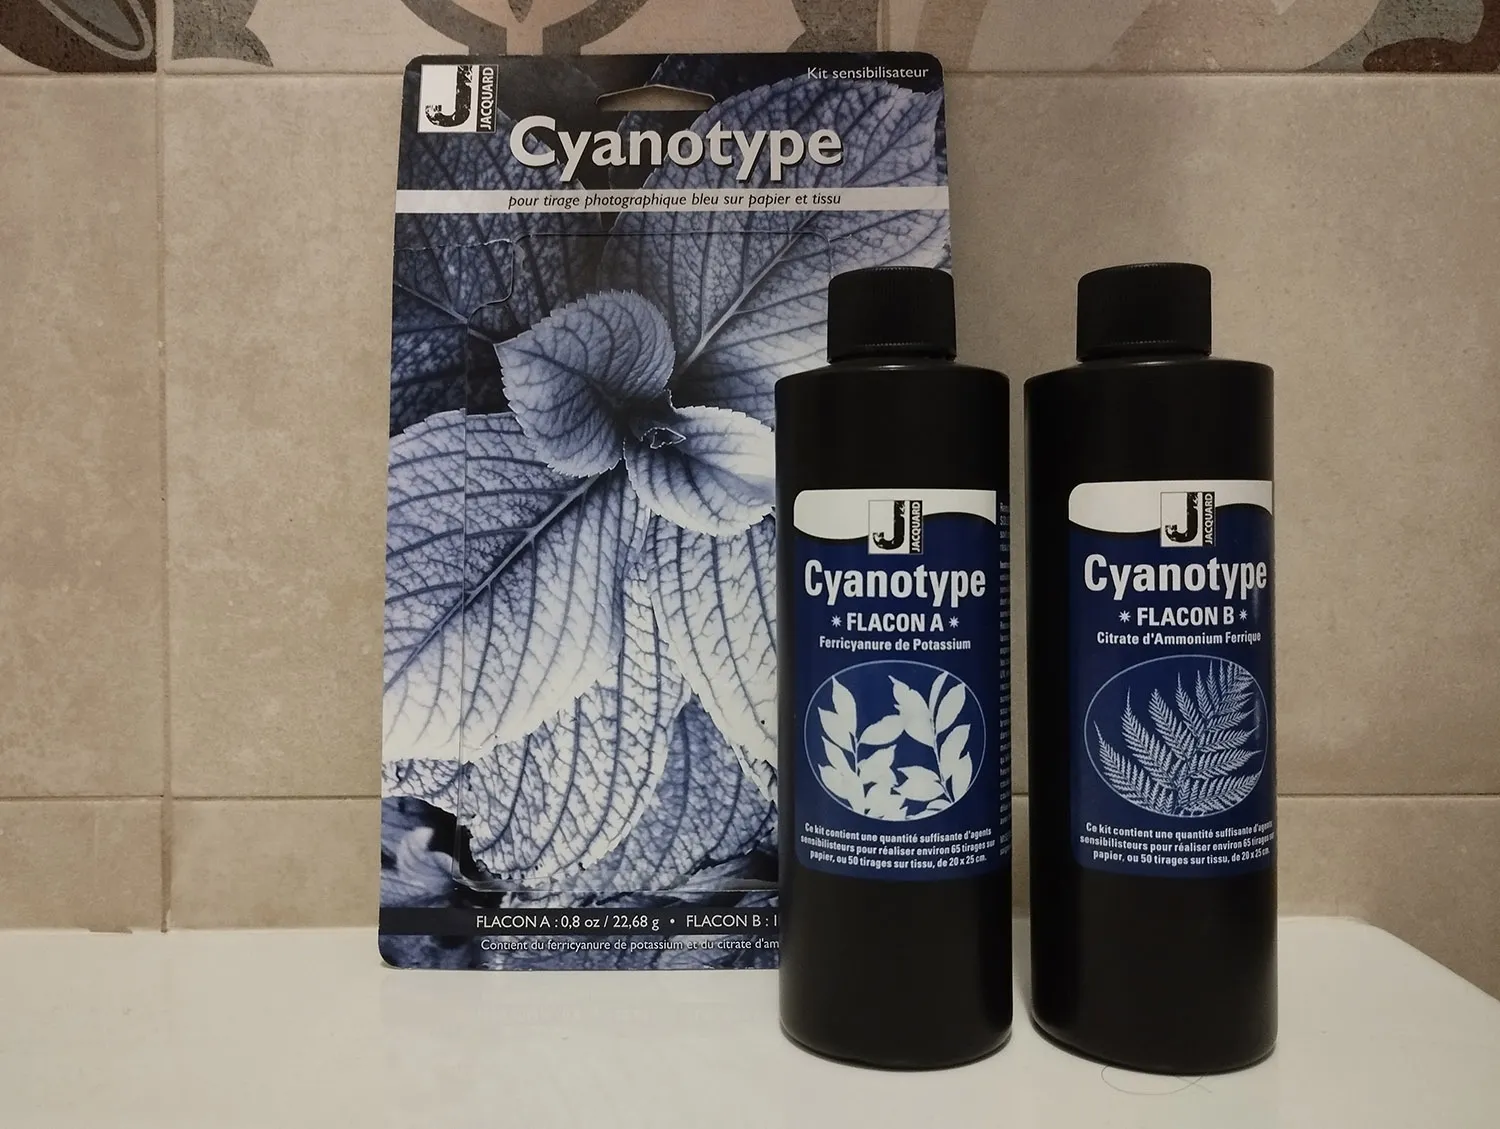 Cyanotype photography00002.jpg